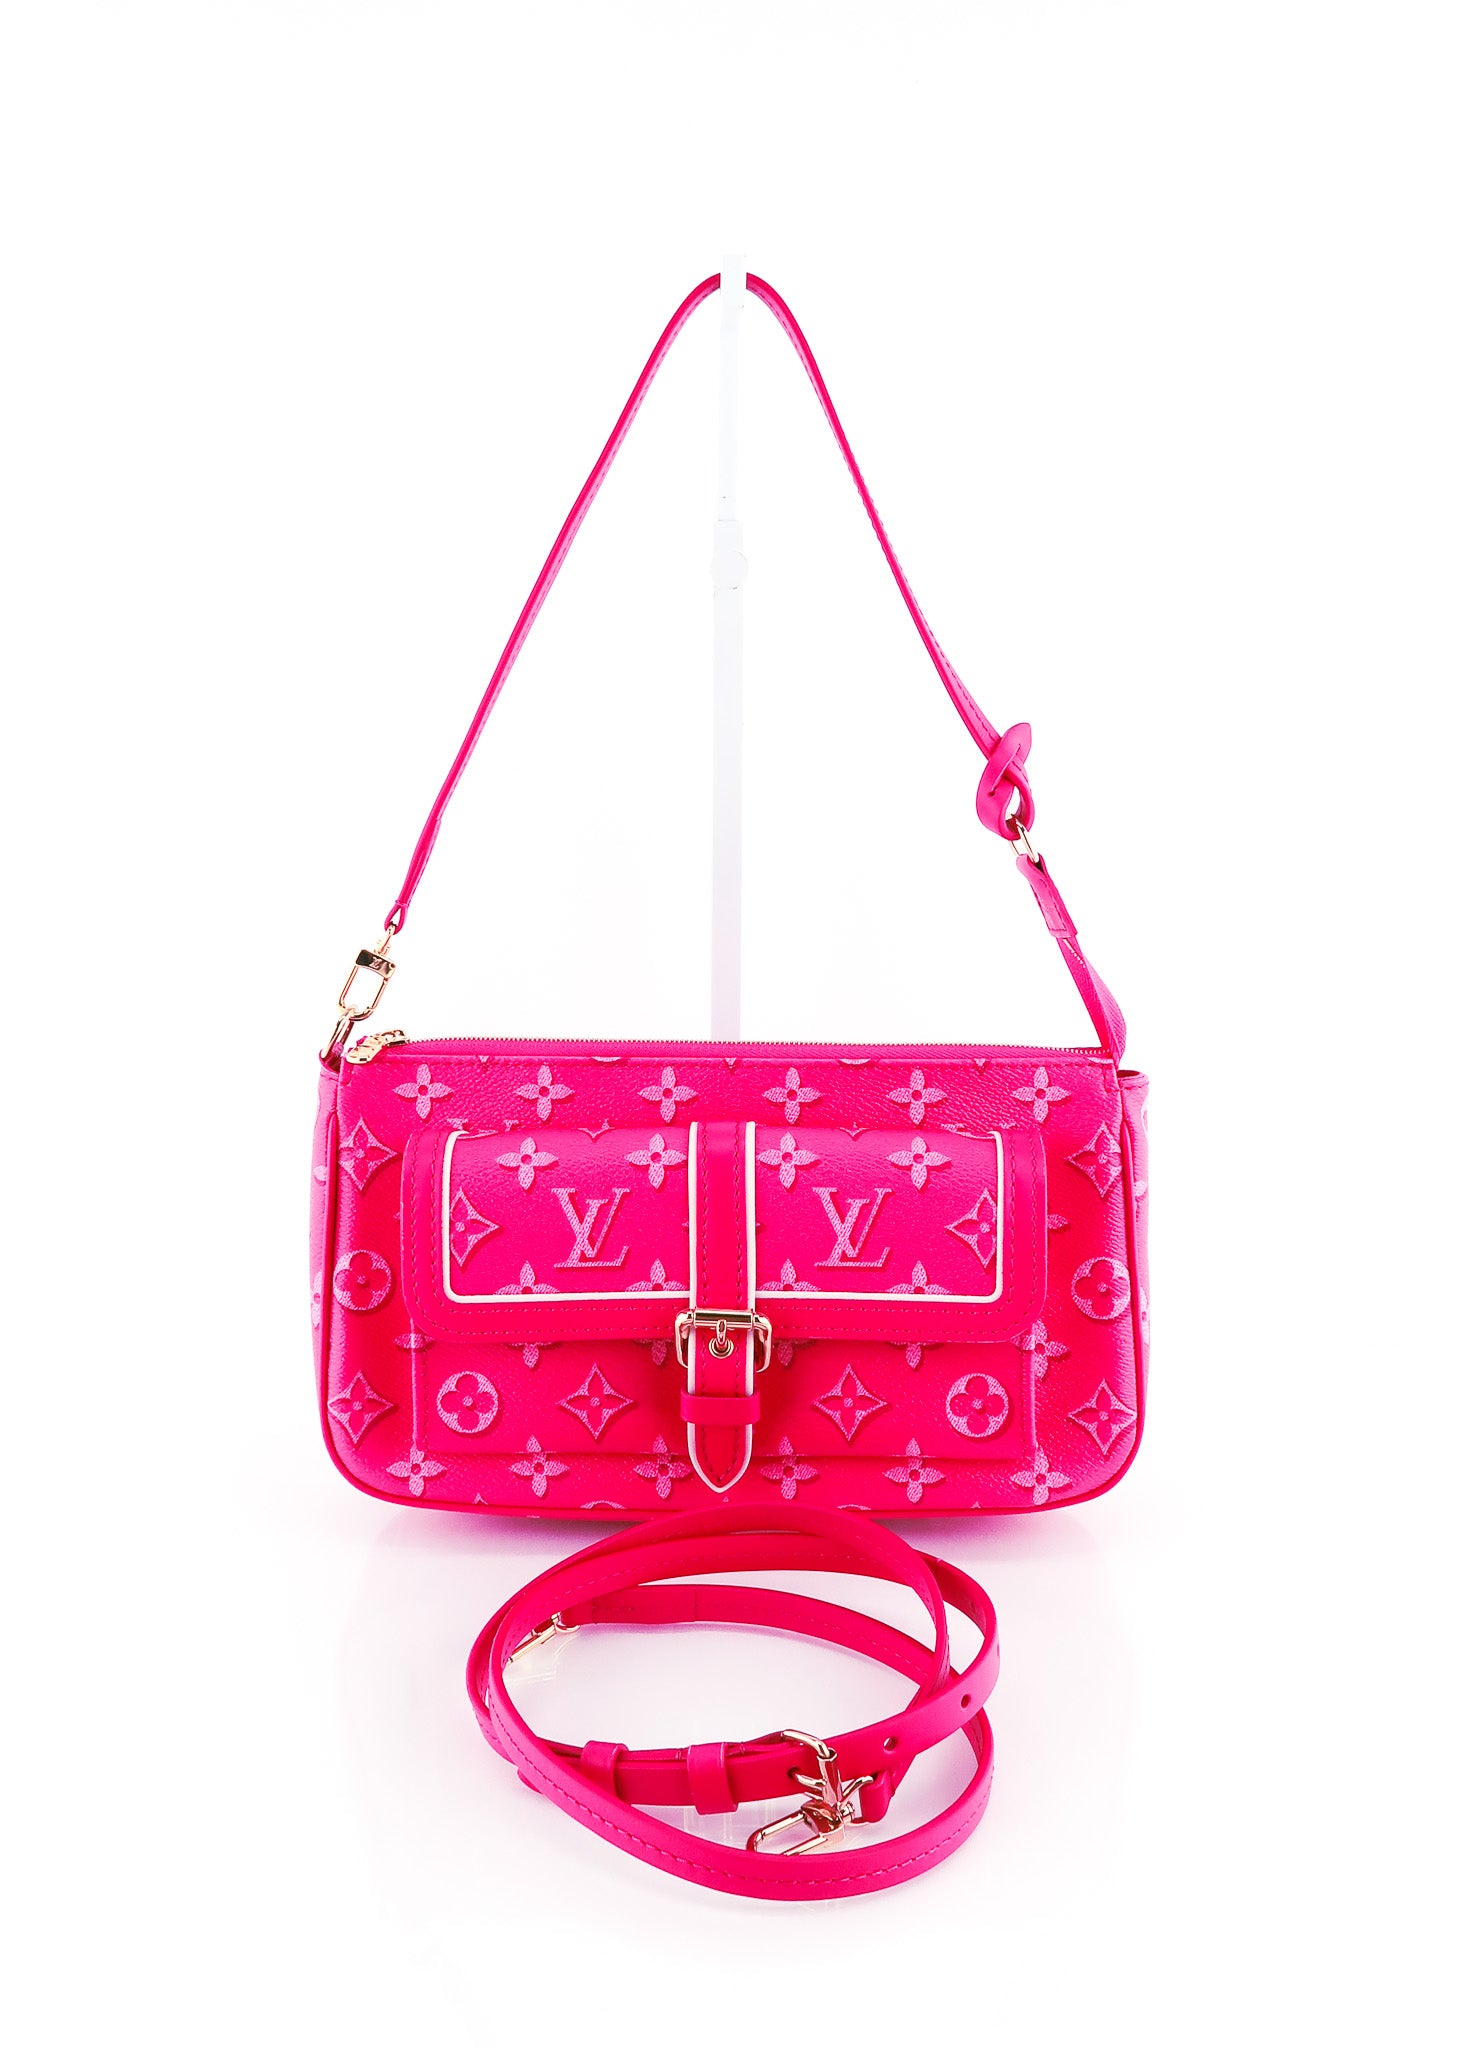 Louis Vuitton Multi Pochette Accessoires Bag REVIEW 🤔 + WHAT FITS INSIDE  ft. Pink Strap 👜 